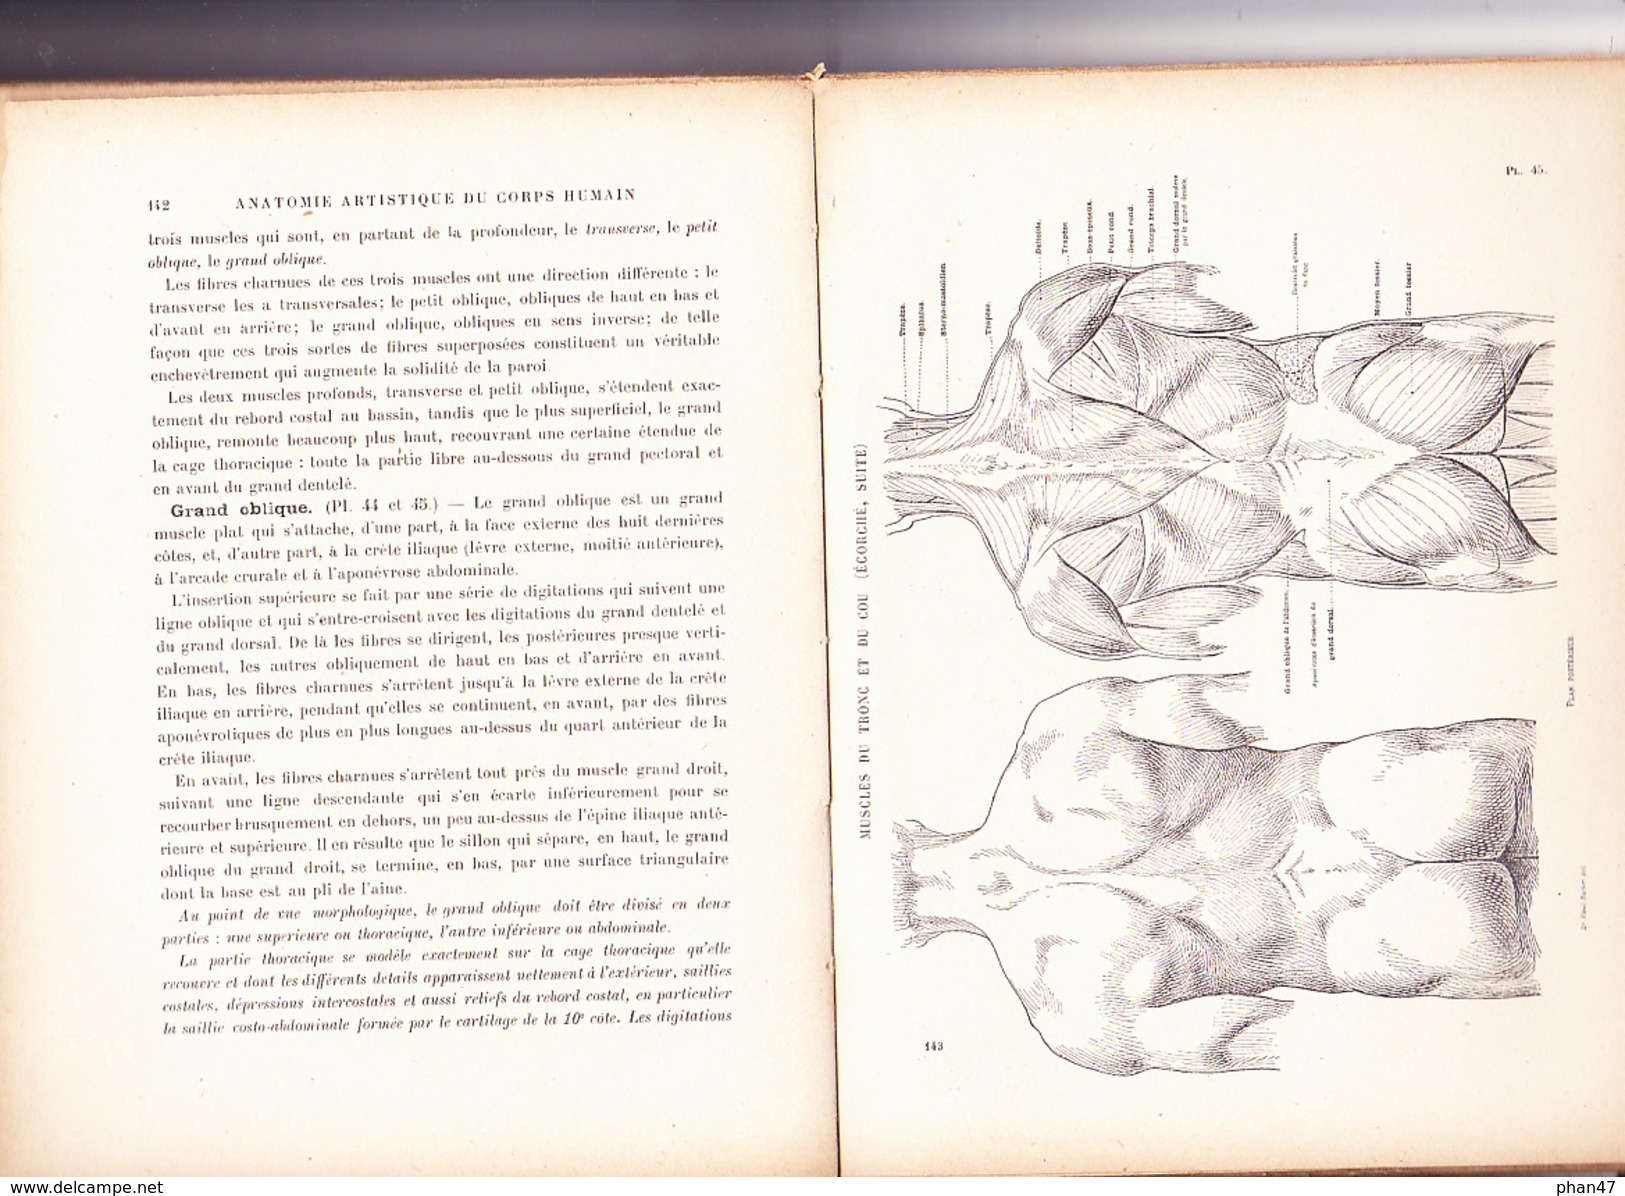 NOUVELLE ANATOMIE ARTISTIQUE; ELEMENTS D'ANATOMIE: L'HOMME Par Docteur Paul RICHER, Librairie Plon 1946 - Arte